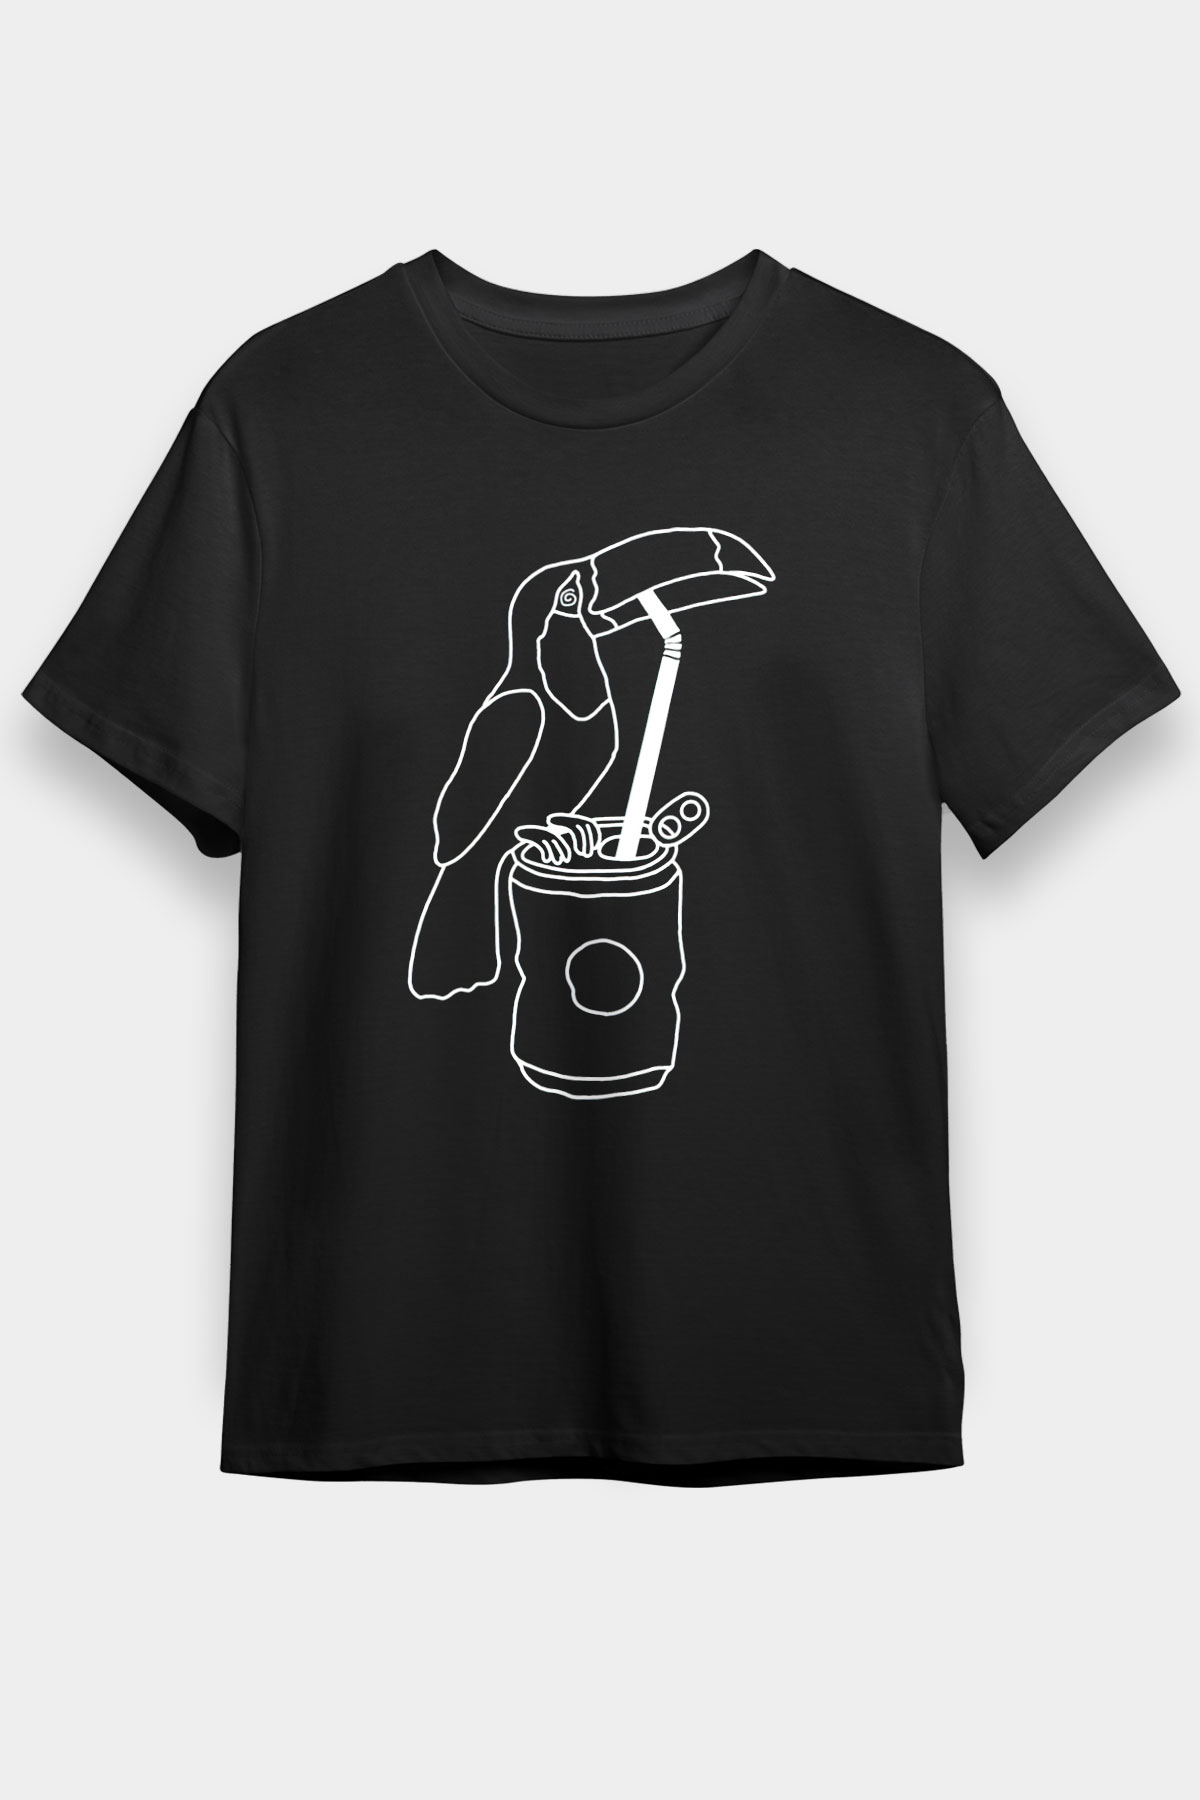 Catfish And The Bottlemen T shirt, Music Band Tshirt 08